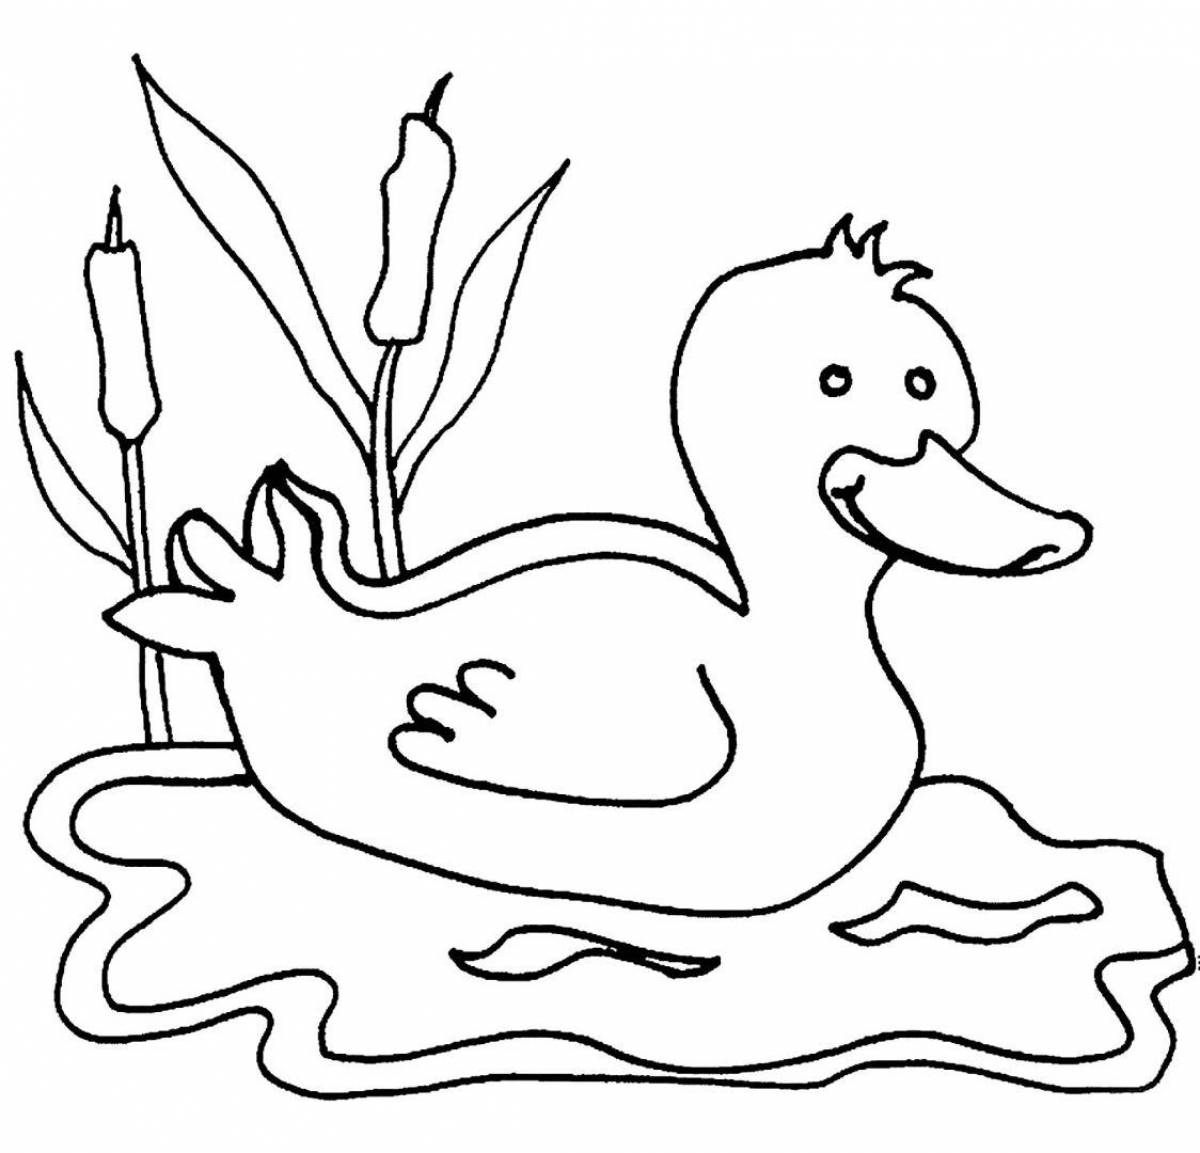 Раскраска radiant duck для детей